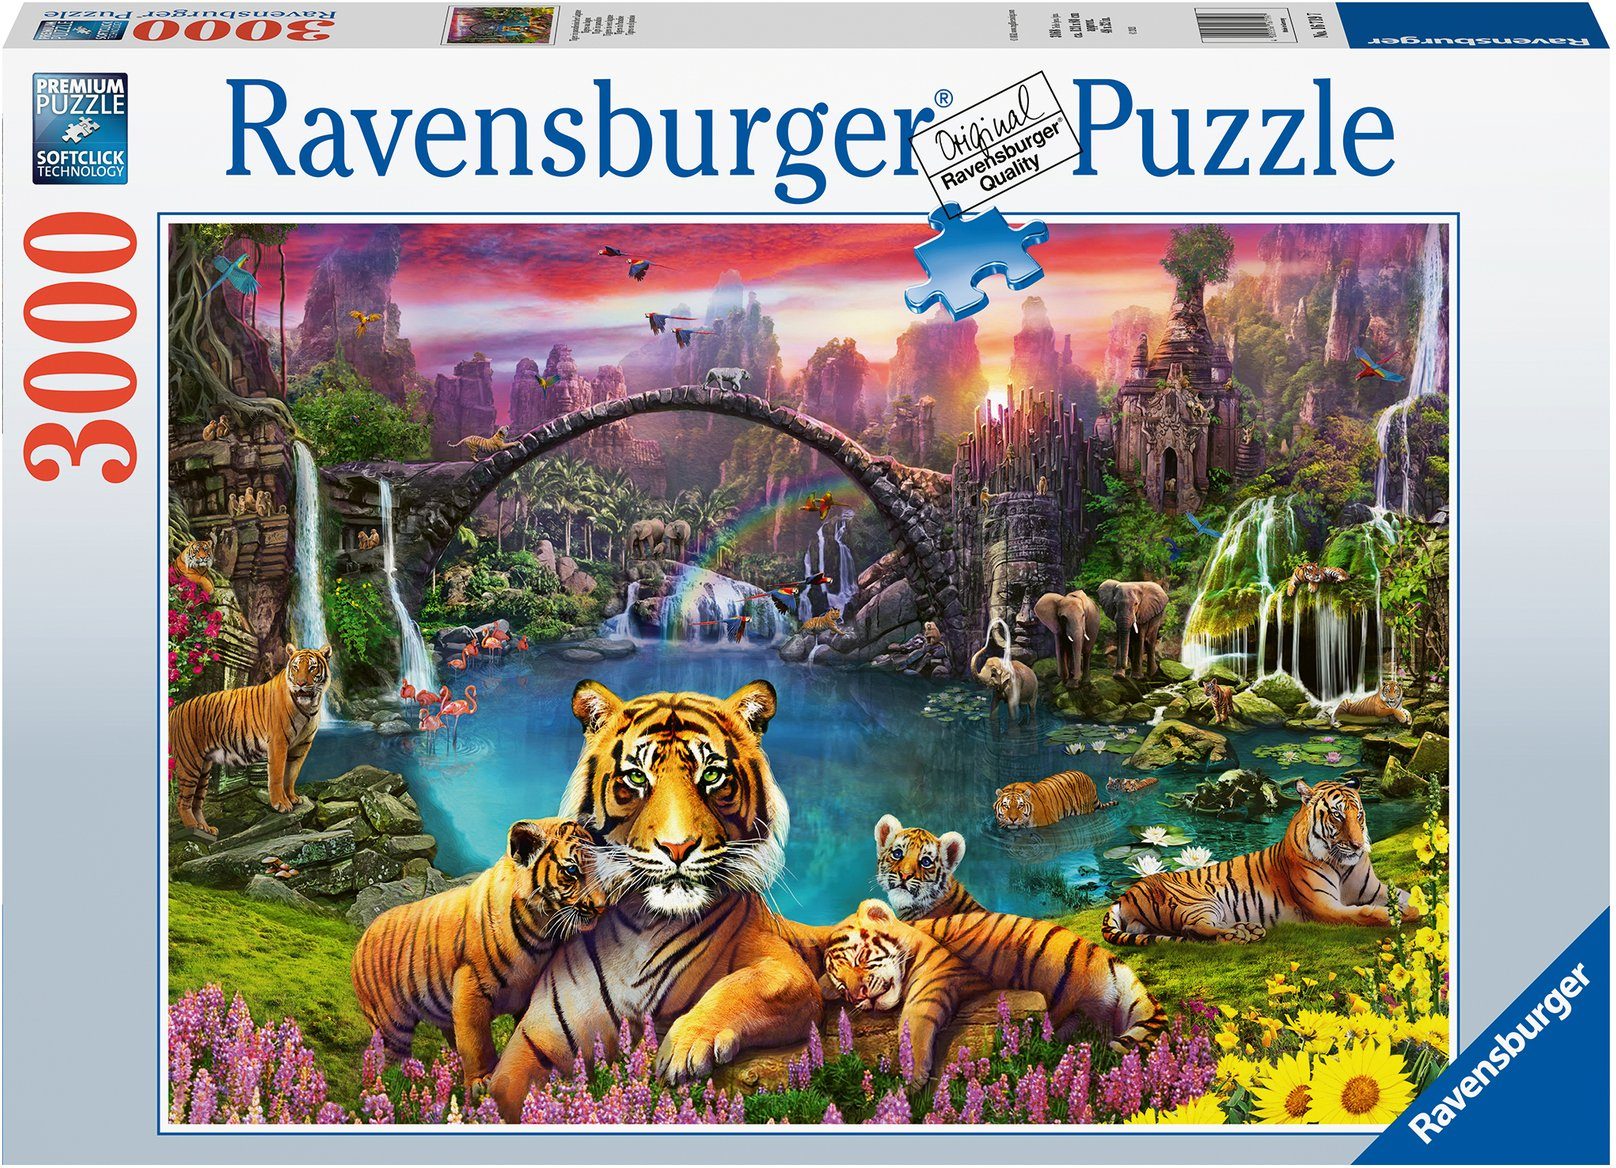 Ravensburger Puzzle Tiger in paradiesischer Lagune, 3000 Puzzleteile, Made in Germany, FSC® - schützt Wald - weltweit